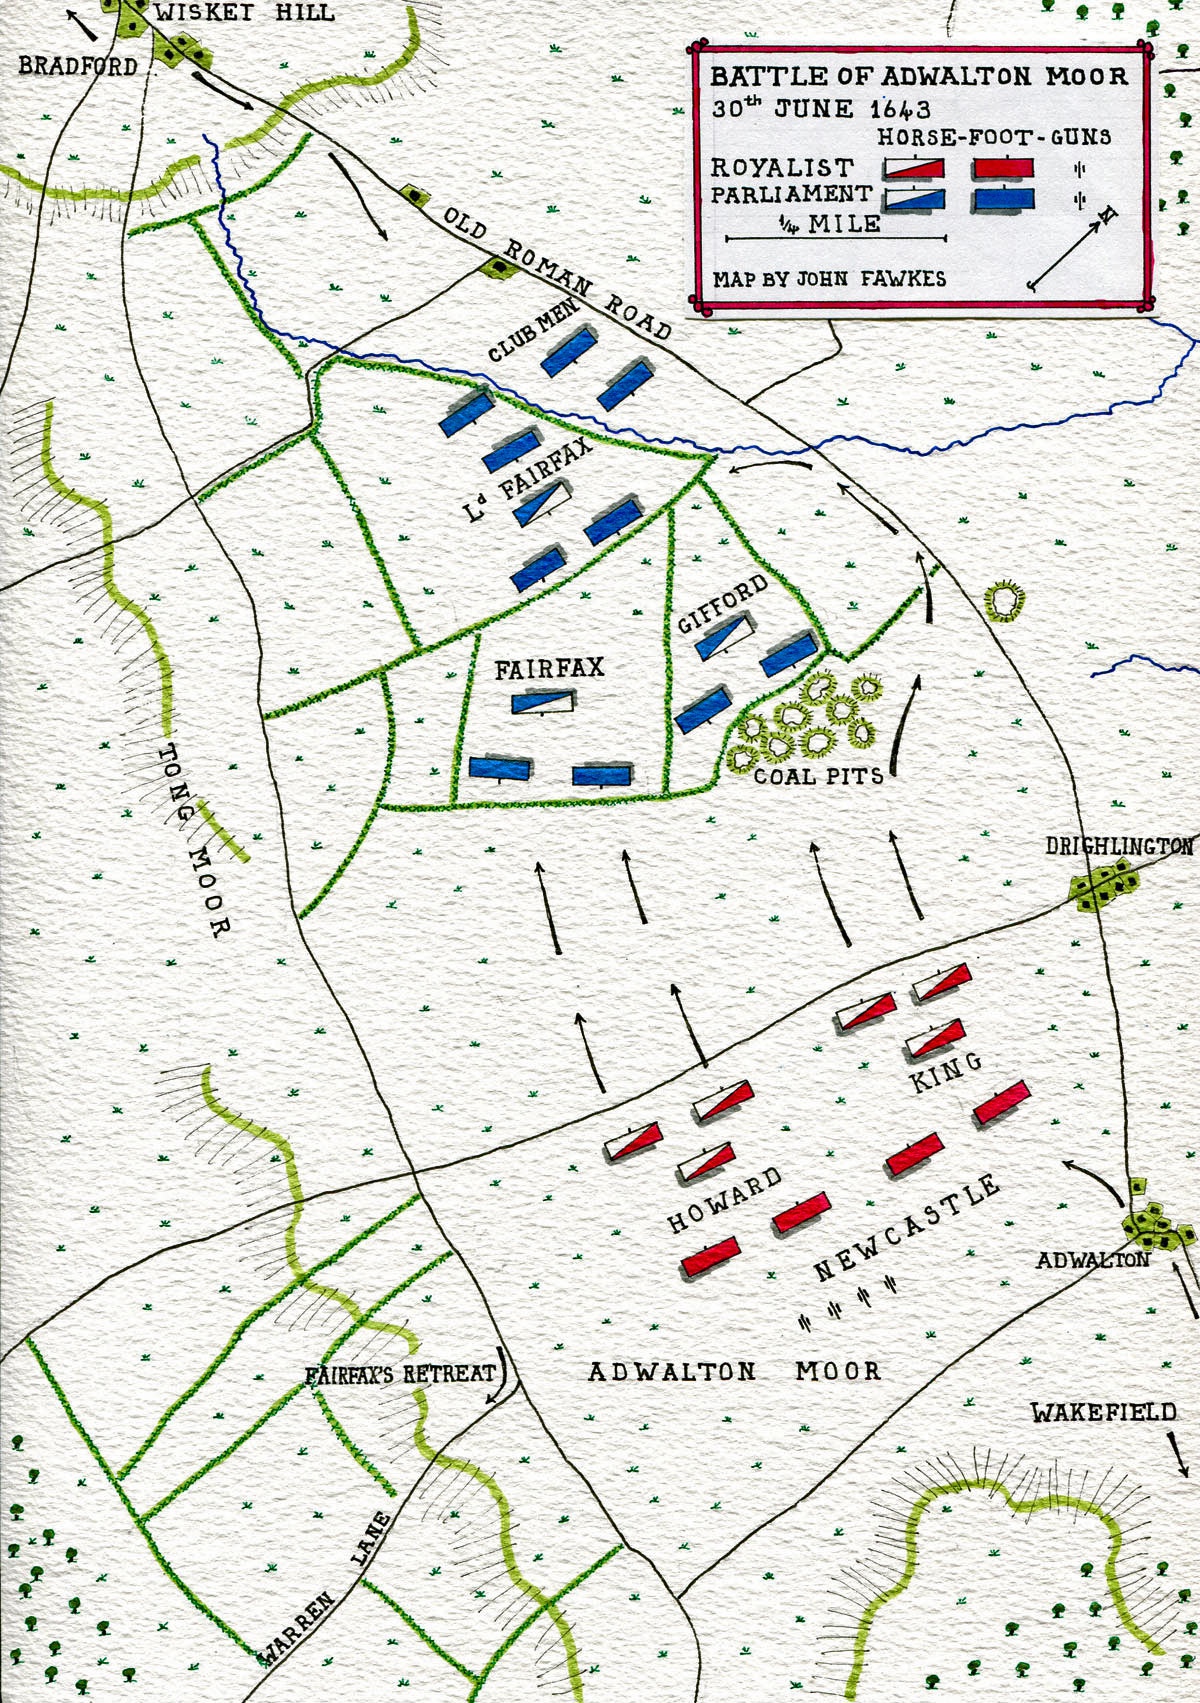 The Battle of Adwalton Moor